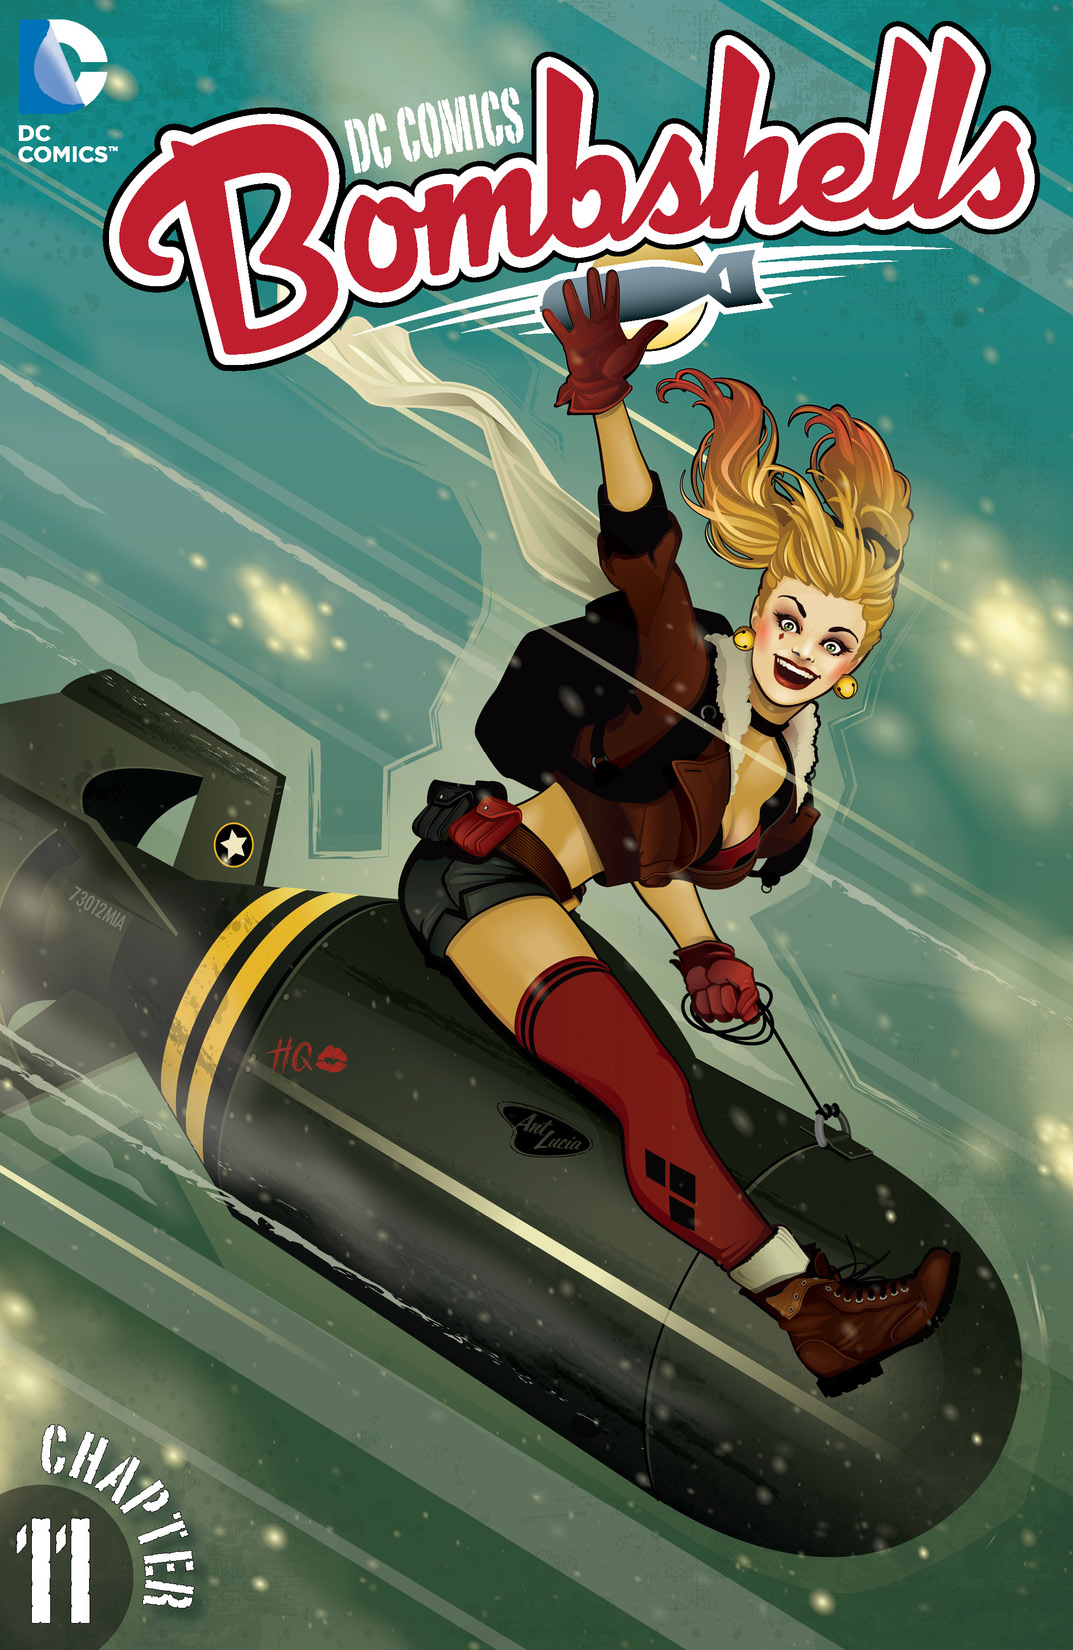 DC Comics: Bombshells #11 preview images